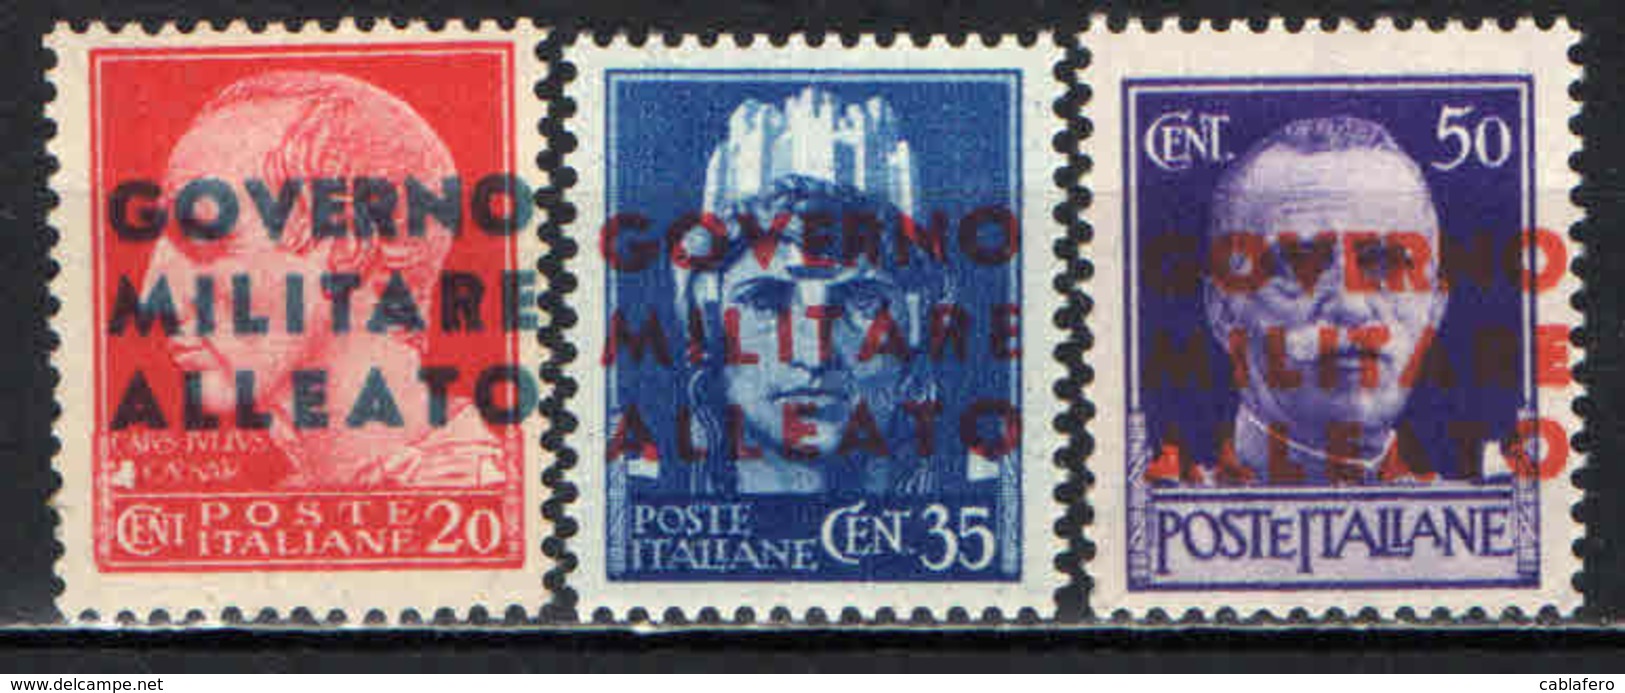 ITALIA - OCCUPAZIONE ANGLO-AMERICANA - 1943 - NAPOLI - MNH - Occup. Anglo-americana: Napoli